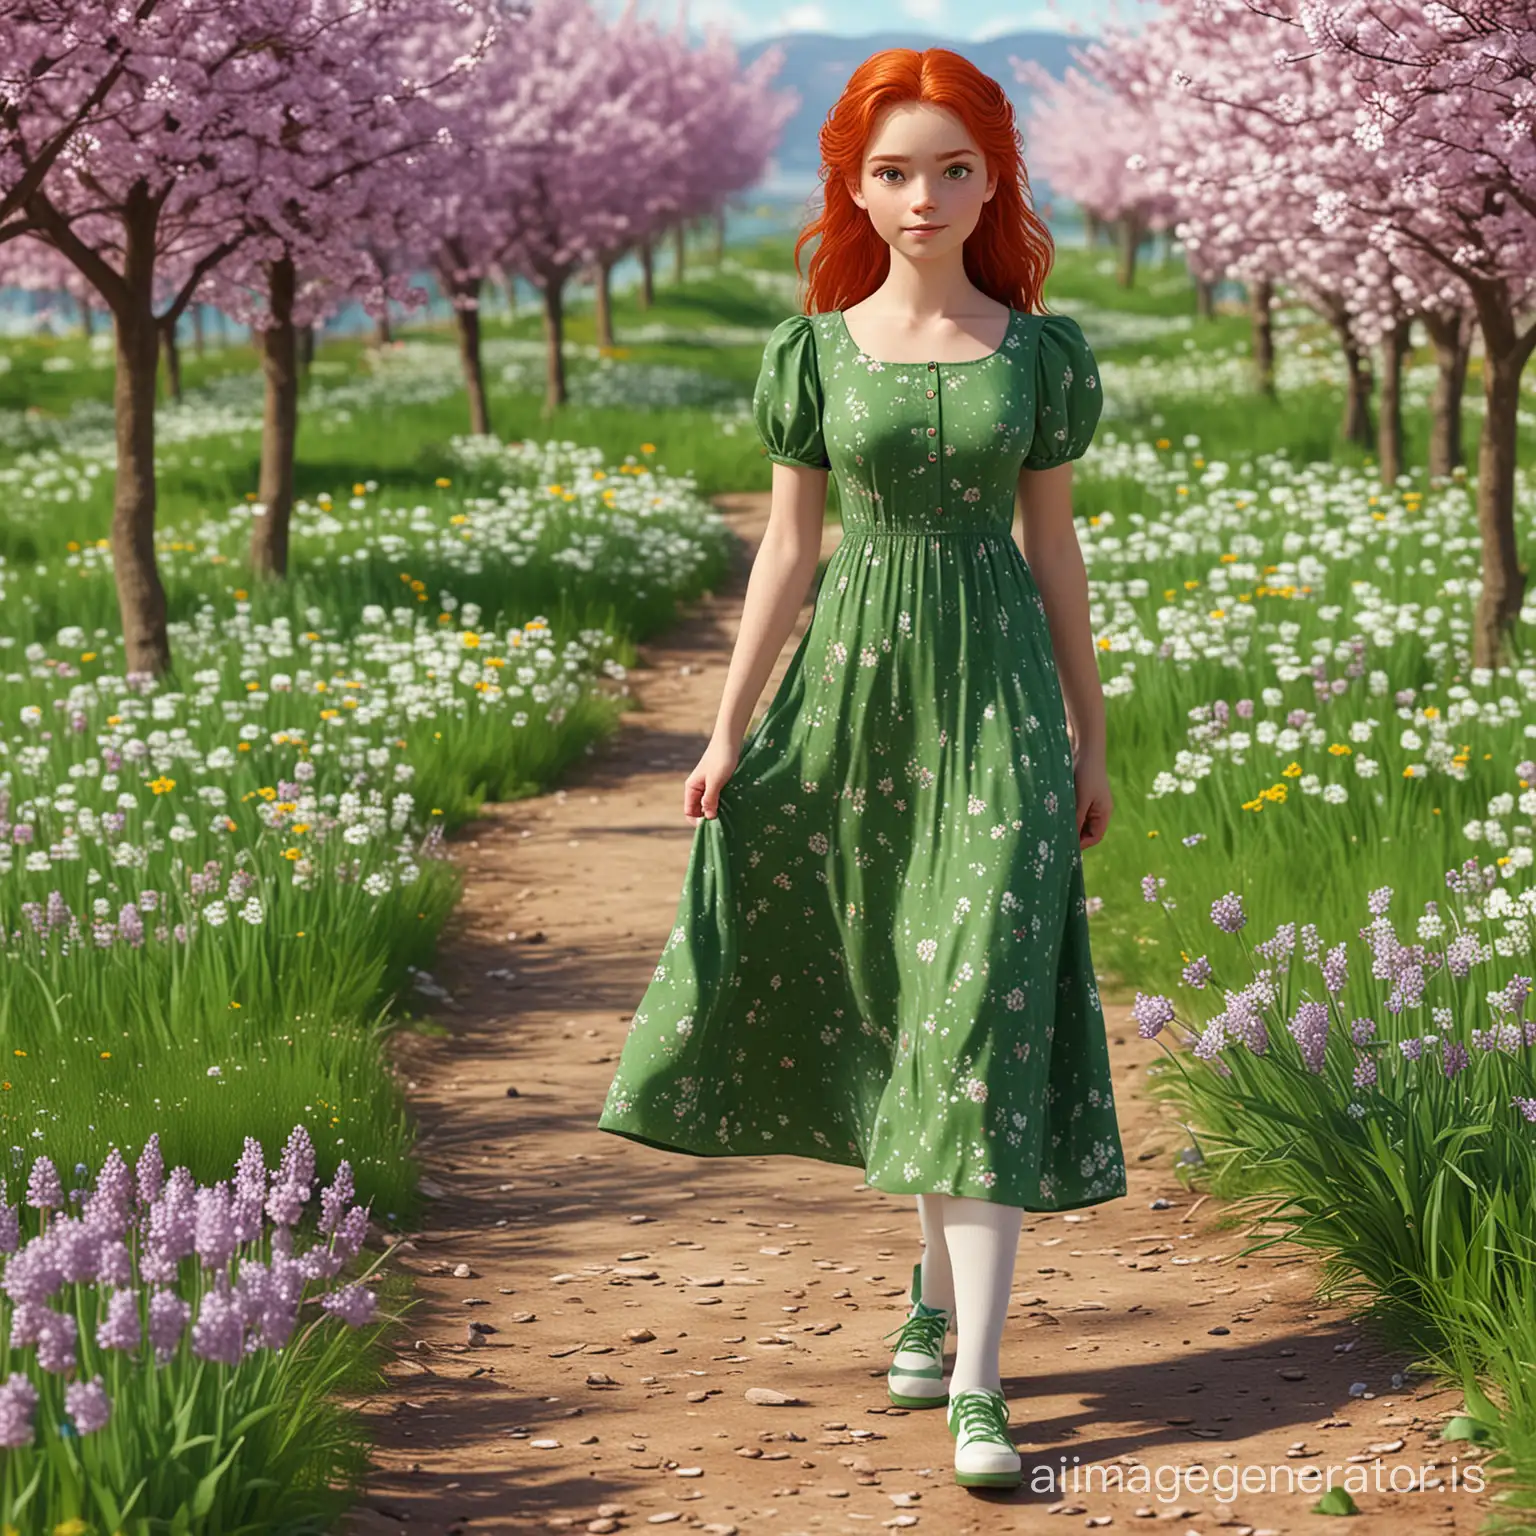 3d графіка: весняний пейзаж та дівчинка, яка має зелені очі, руде волосся одягнена зелену сукню з короткими рукавами максі довжини, білі колготки, фіолетові туфелькі